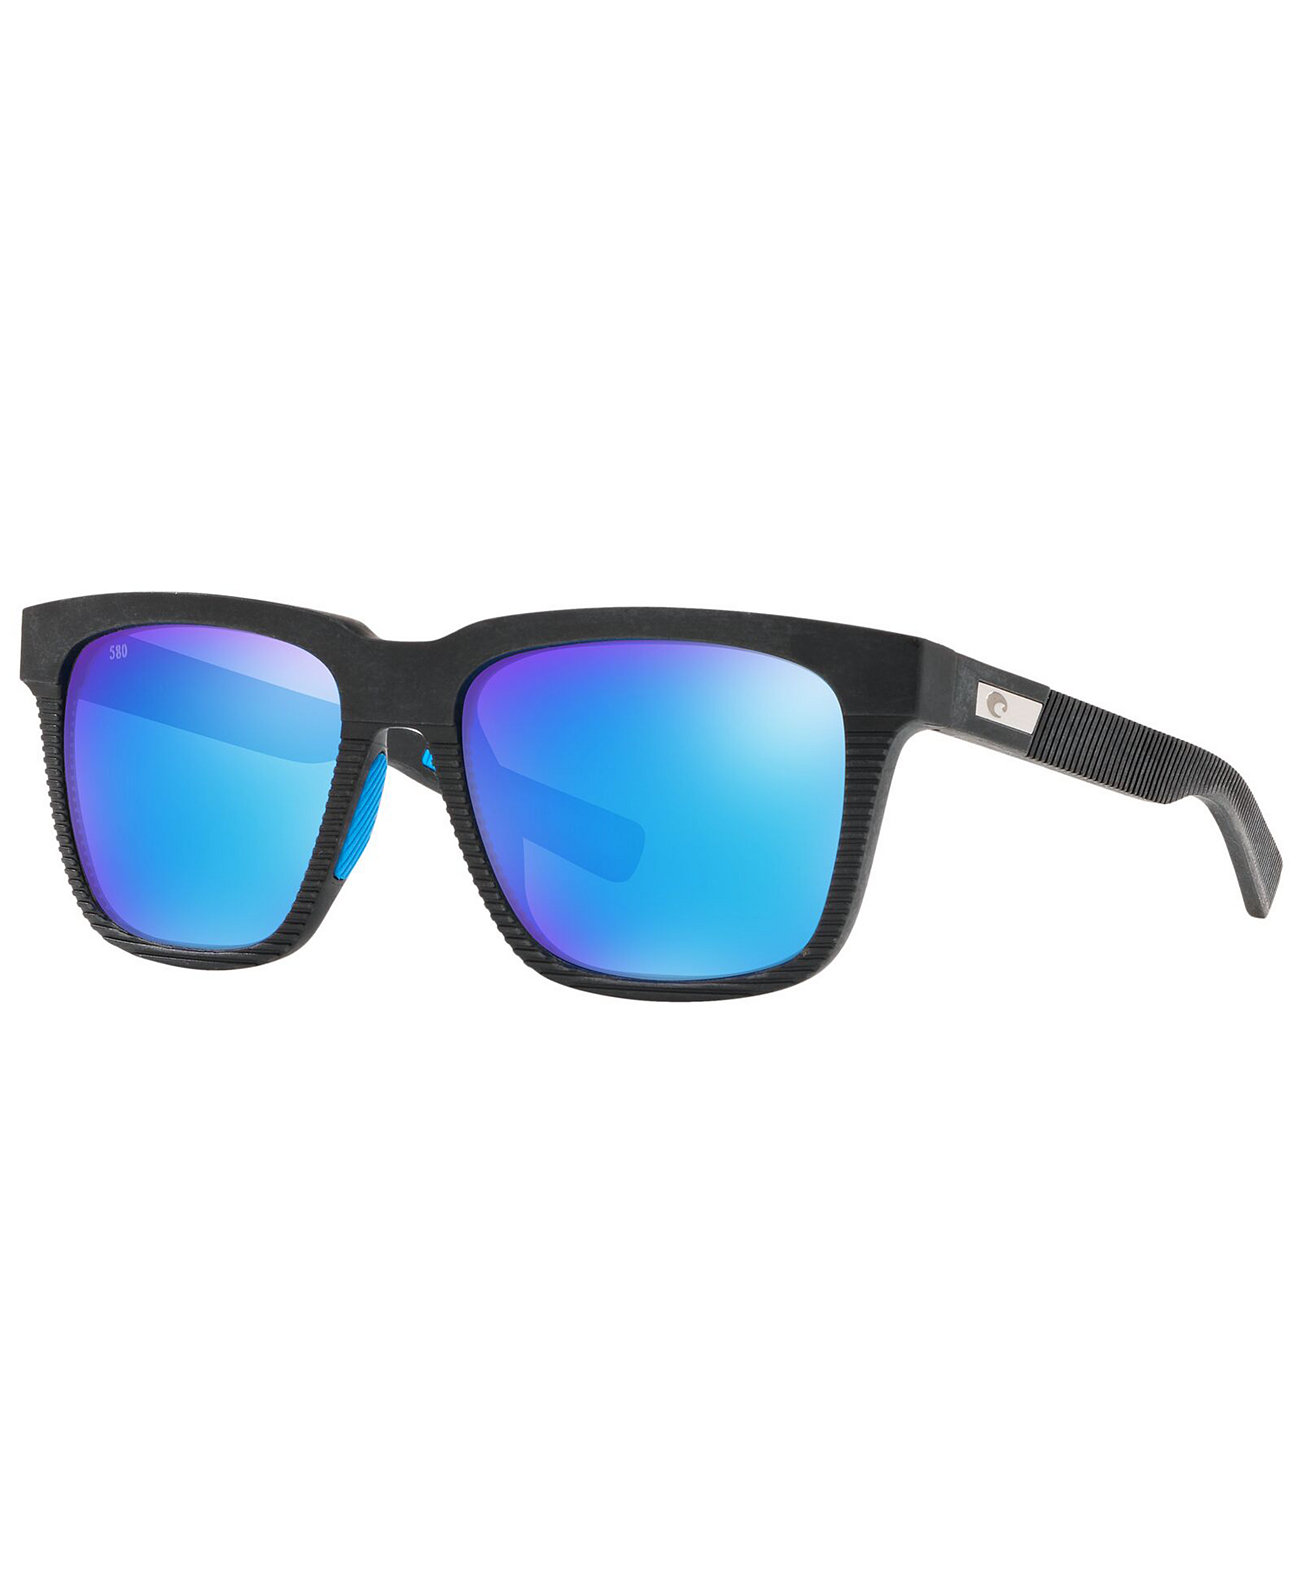 Мужские поляризованные солнцезащитные очки, Pescador 55 COSTA DEL MAR